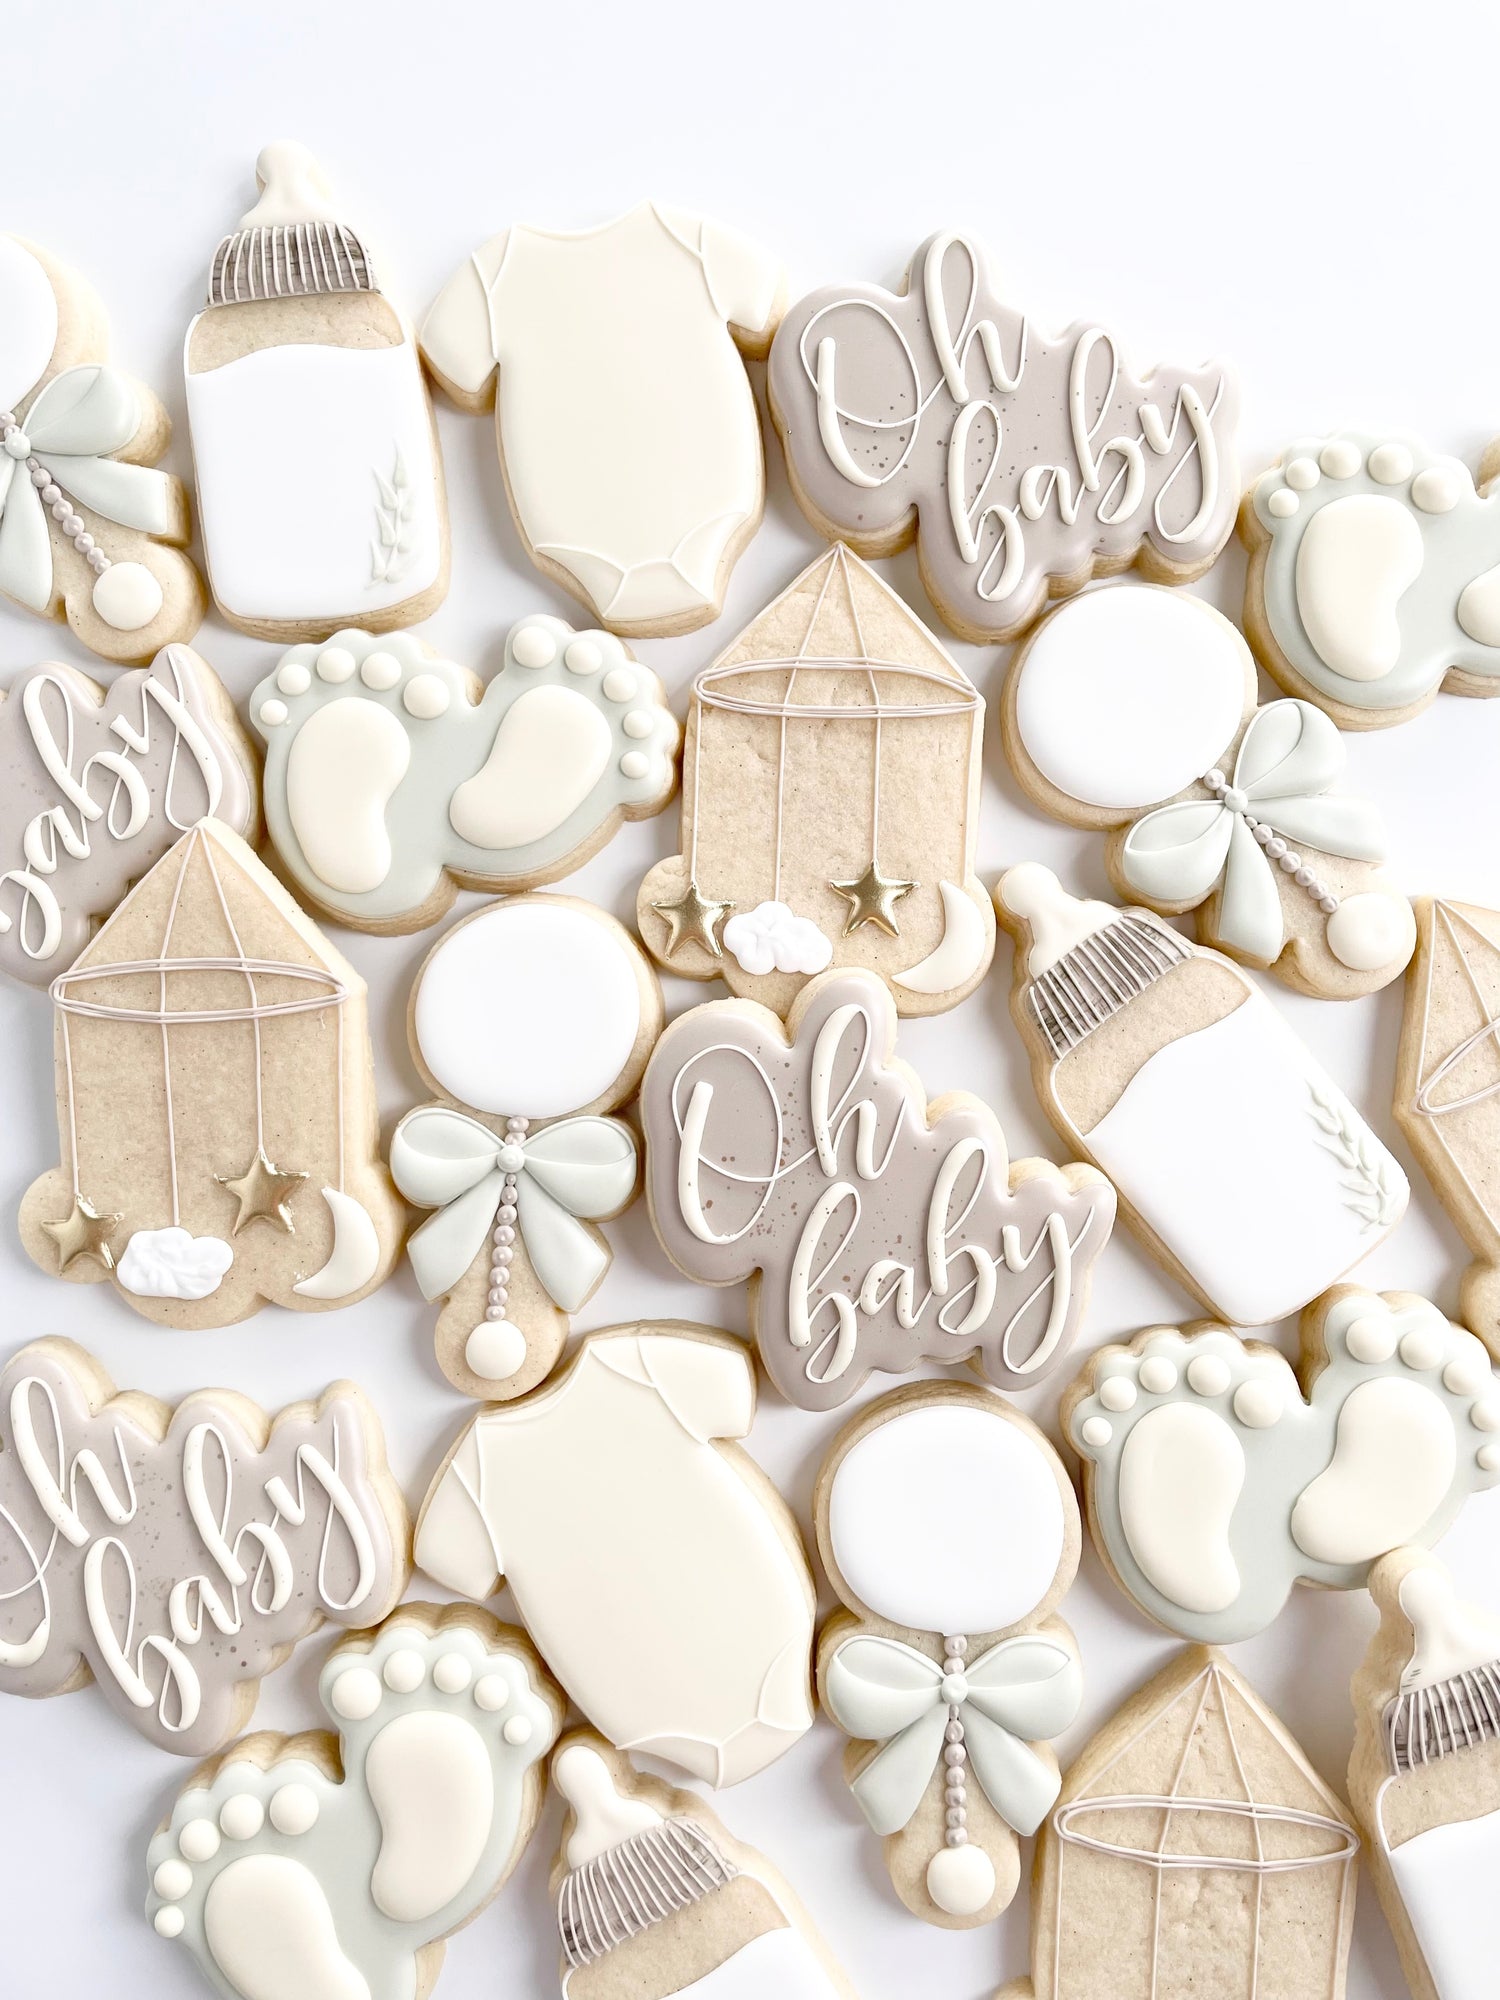 Baby Birthday & Shower Cookie Cutter & Stamp - Teddy Bear Crib